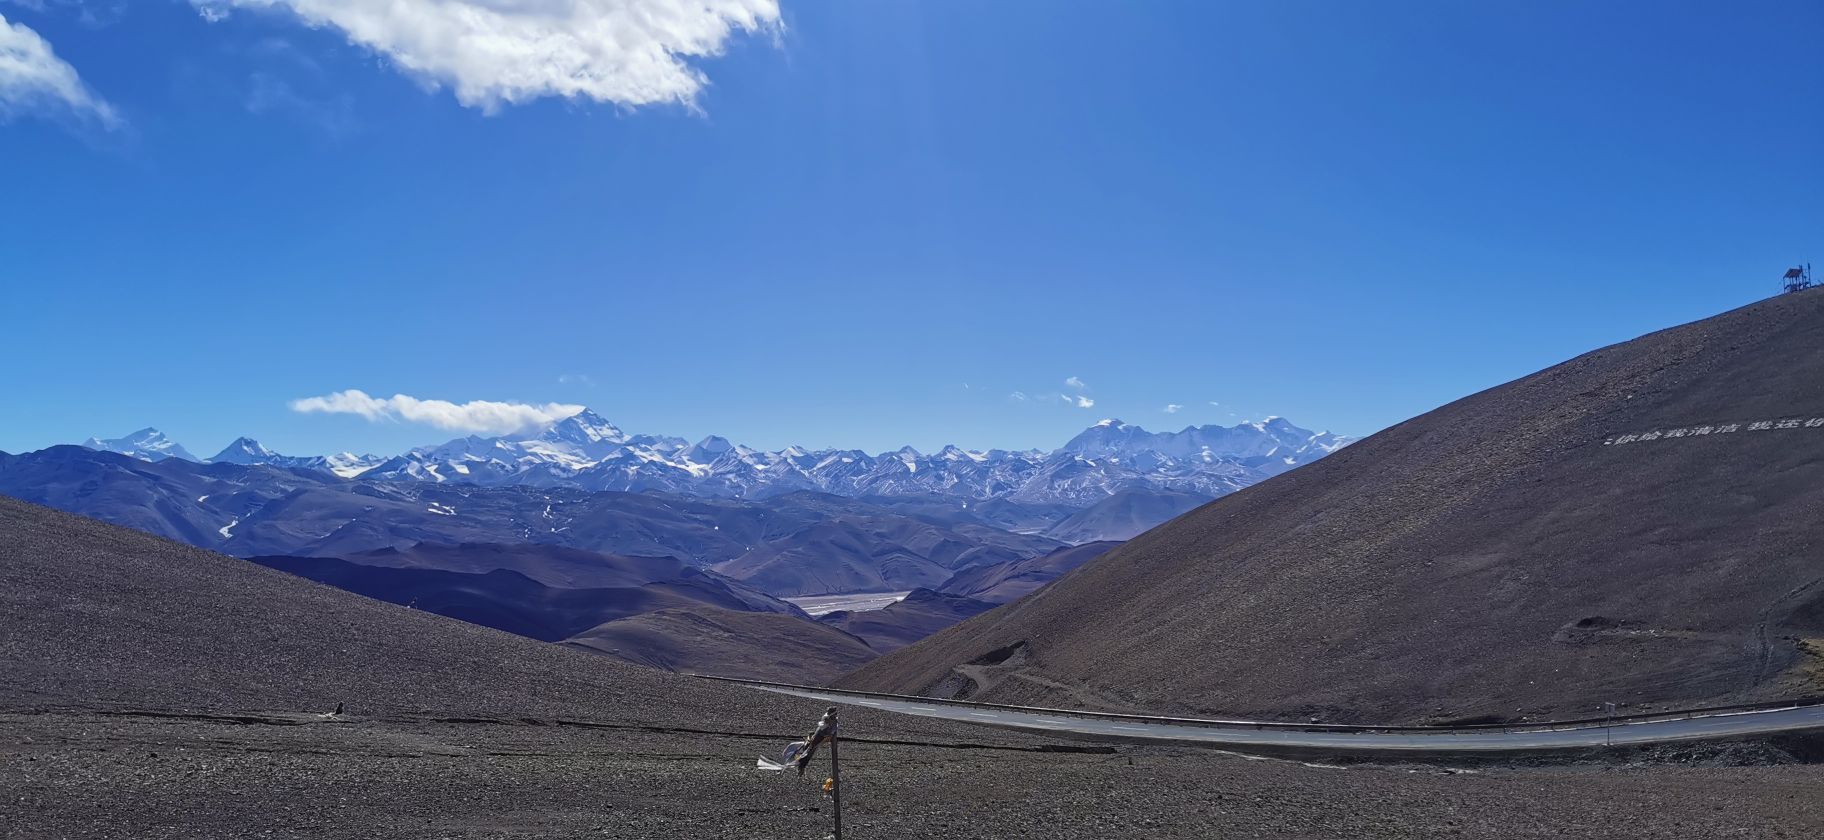 珠穆朗玛峰观境平台